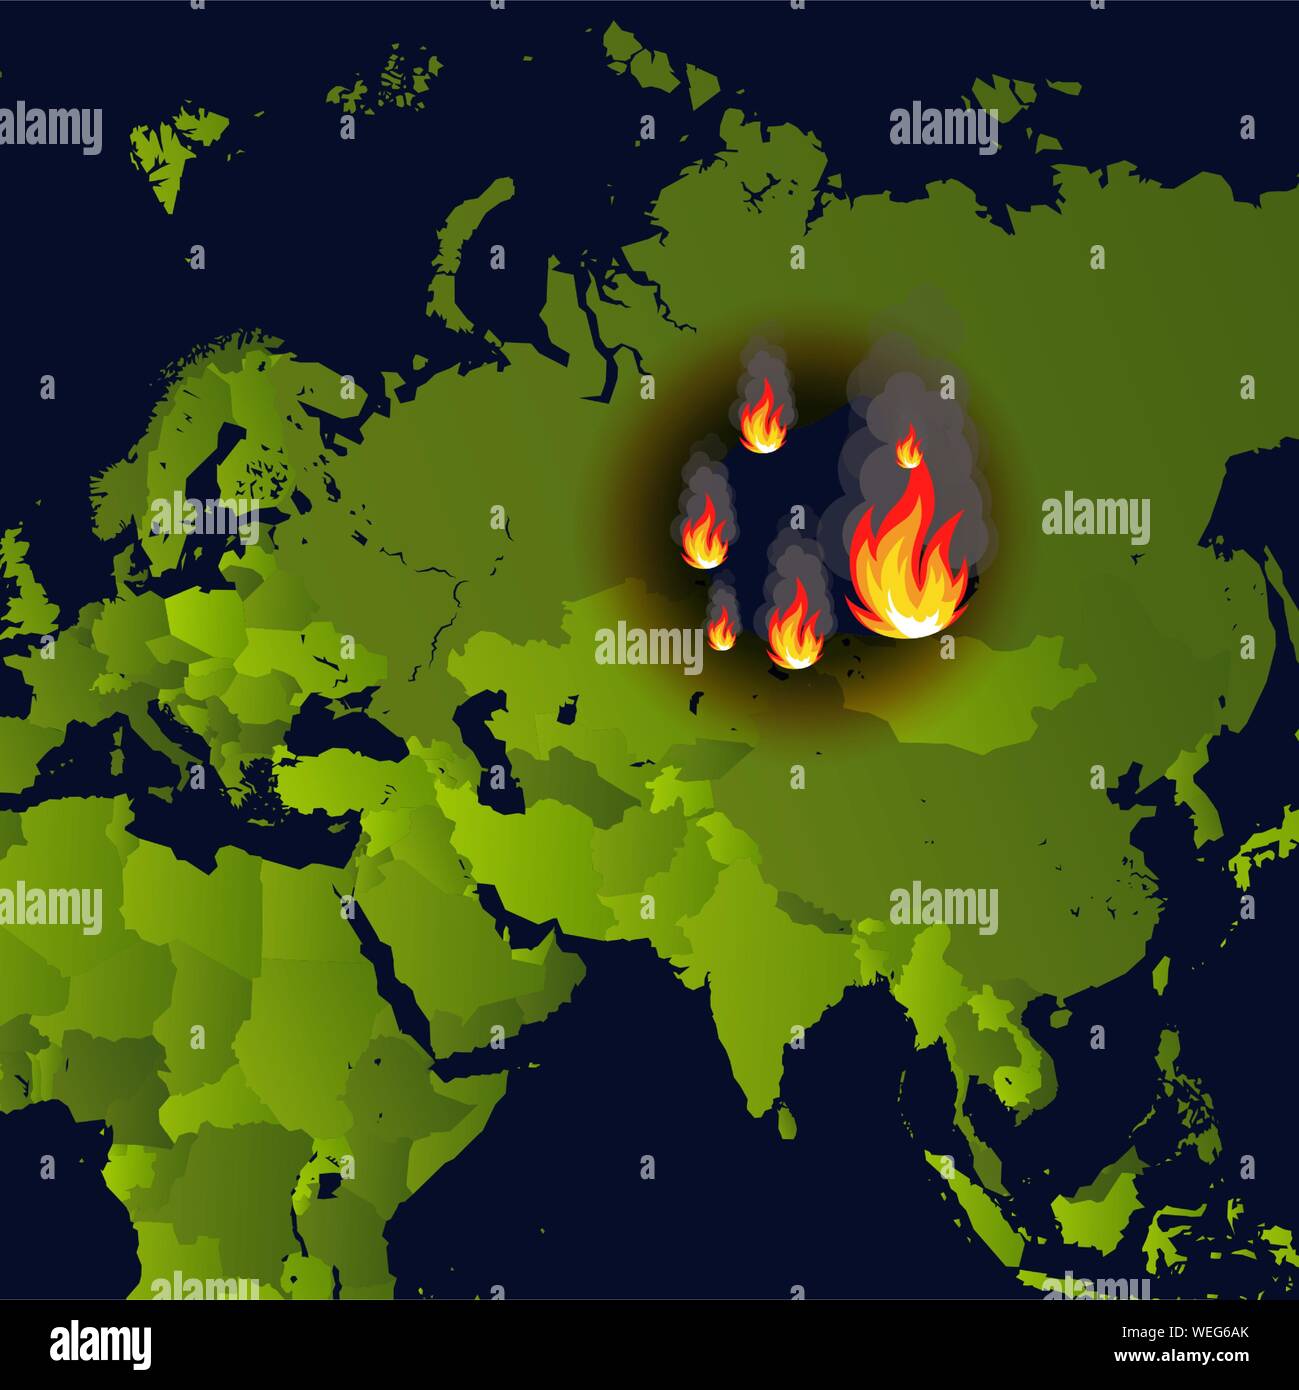 Gli incendi boschivi banner, il posto del fuoco sulla mappa, disaster in russo siberia news, carta che brucia i fumi e smolders dal fuoco, illustrazione vettoriale. Illustrazione Vettoriale